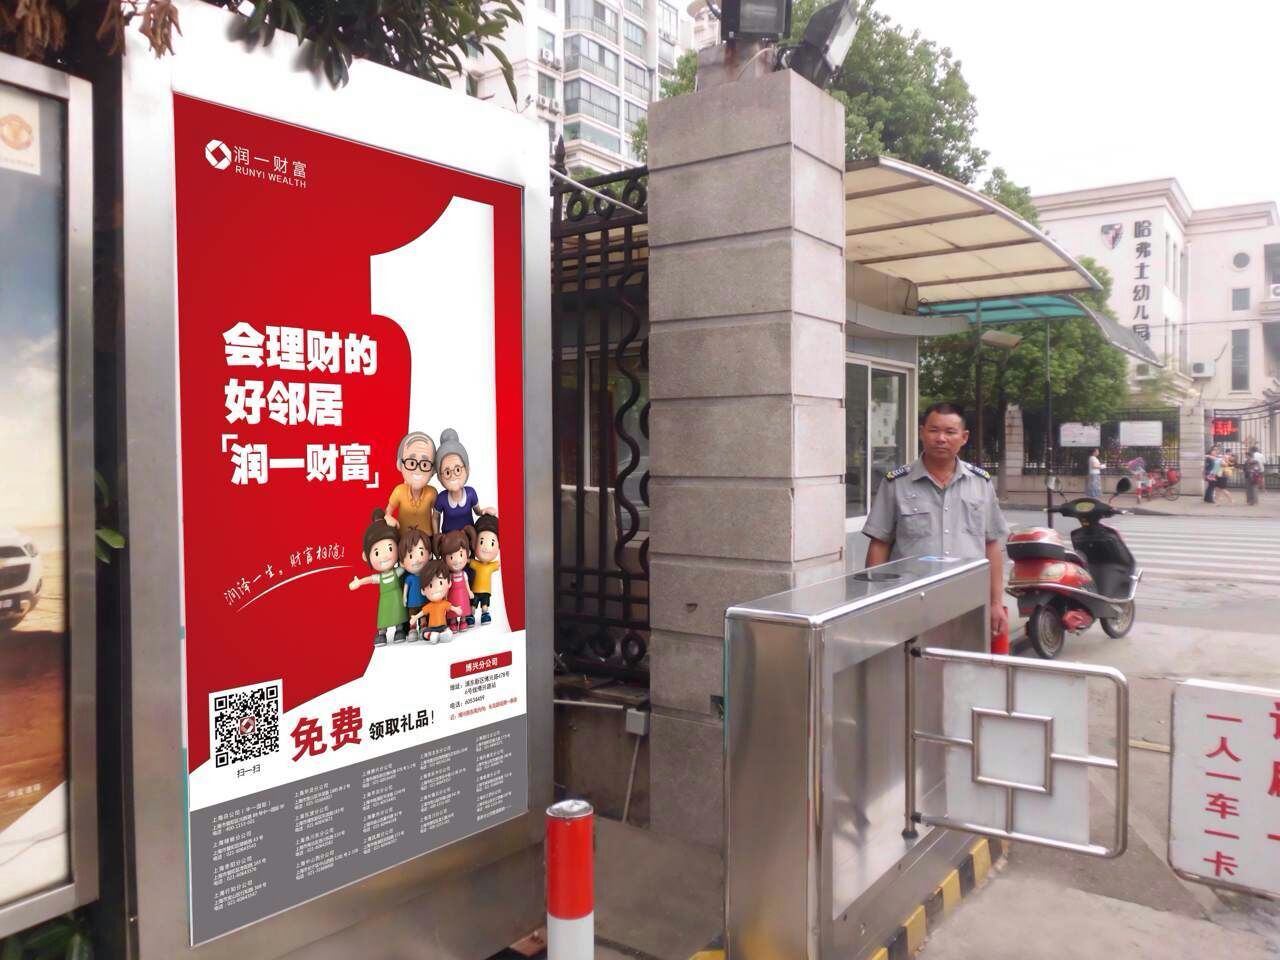 专业发布上海灯箱广告 就找上海亚瀚传媒产品